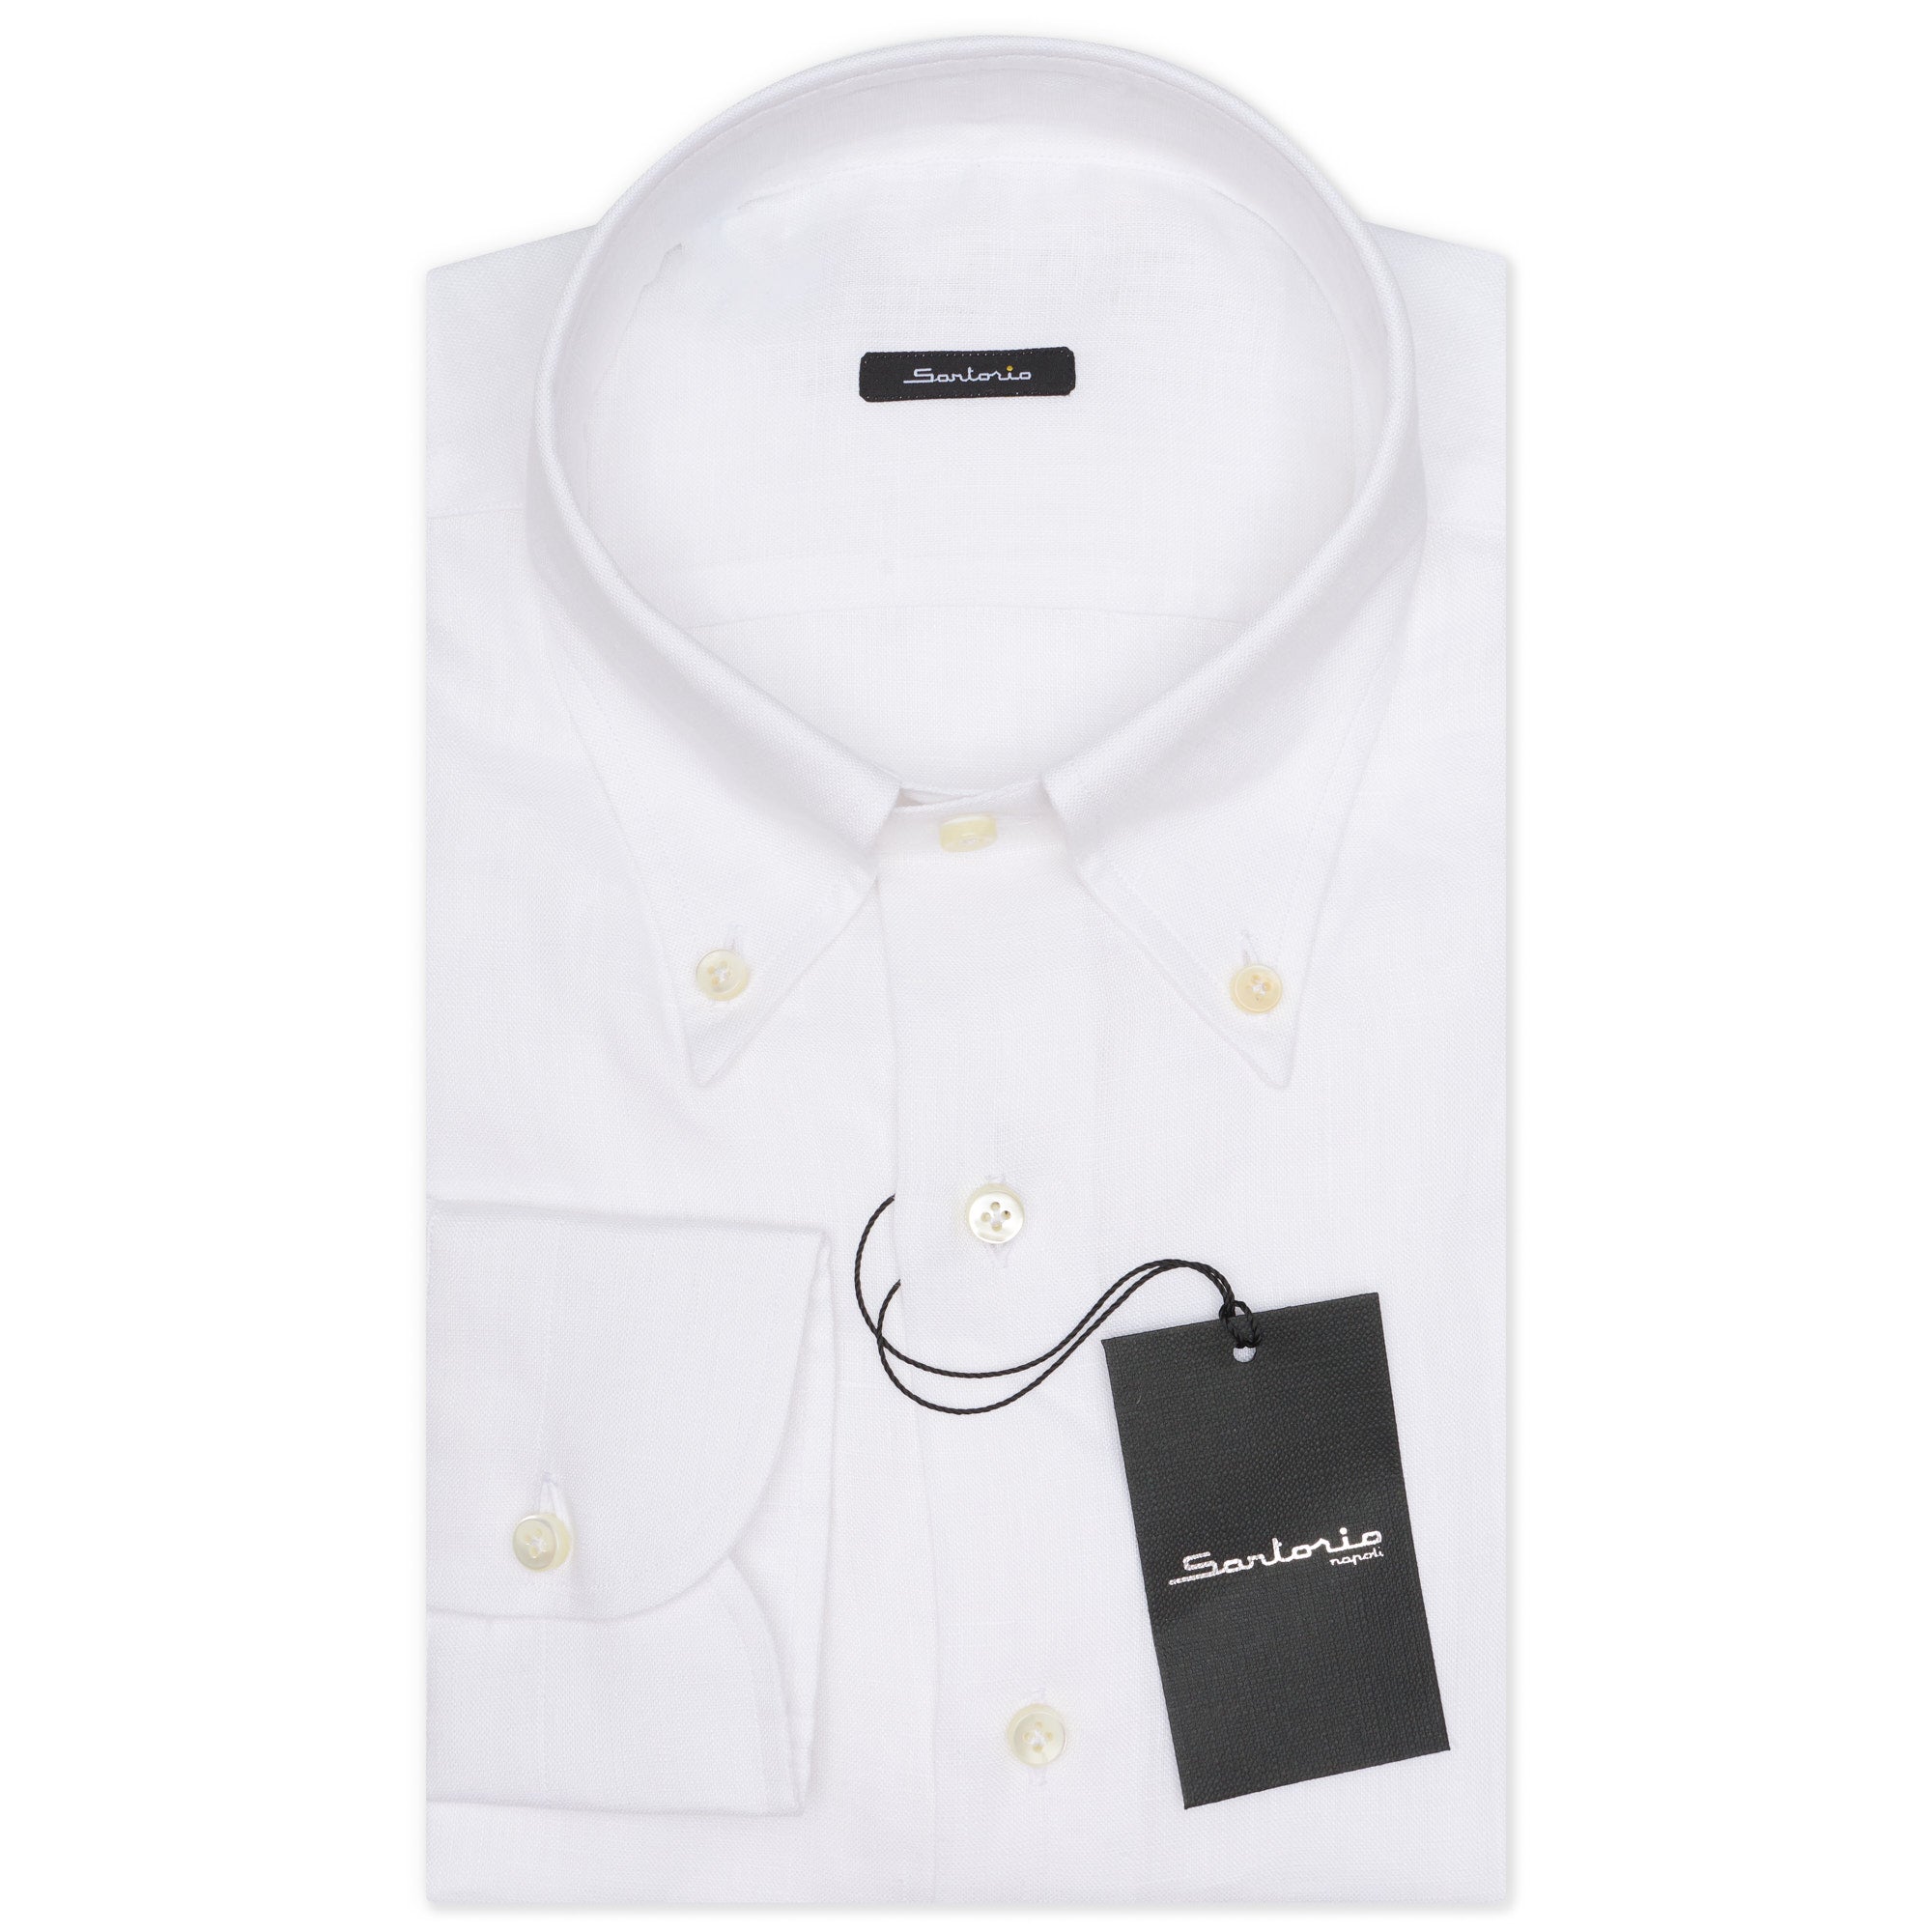 SARTORIO Napoli by KITON White Linen Button-Down Shirt EU 41 US 16 NEW